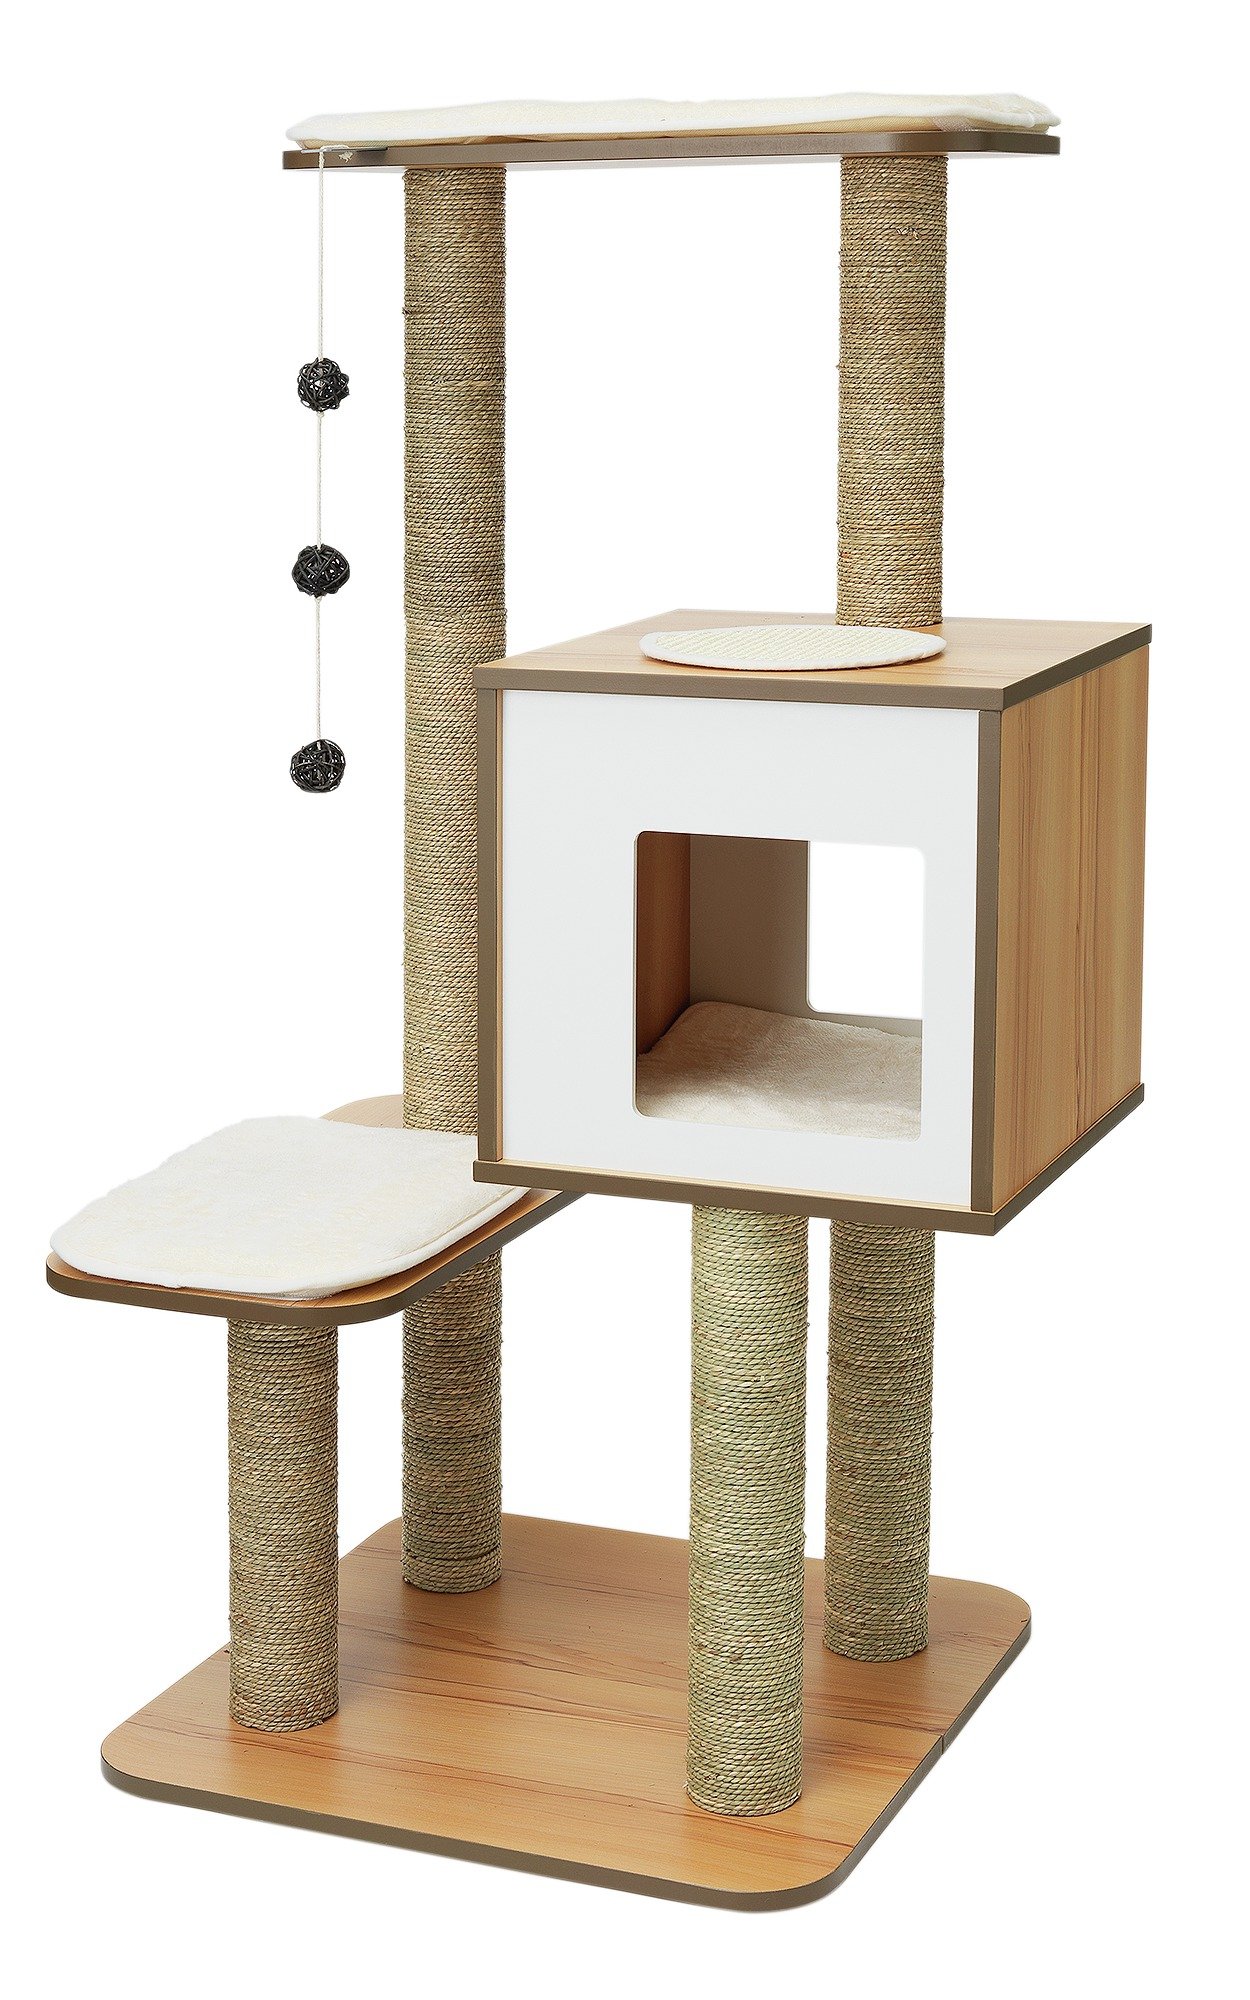 Review of Vesper Cat Furniture V High Base Walnut